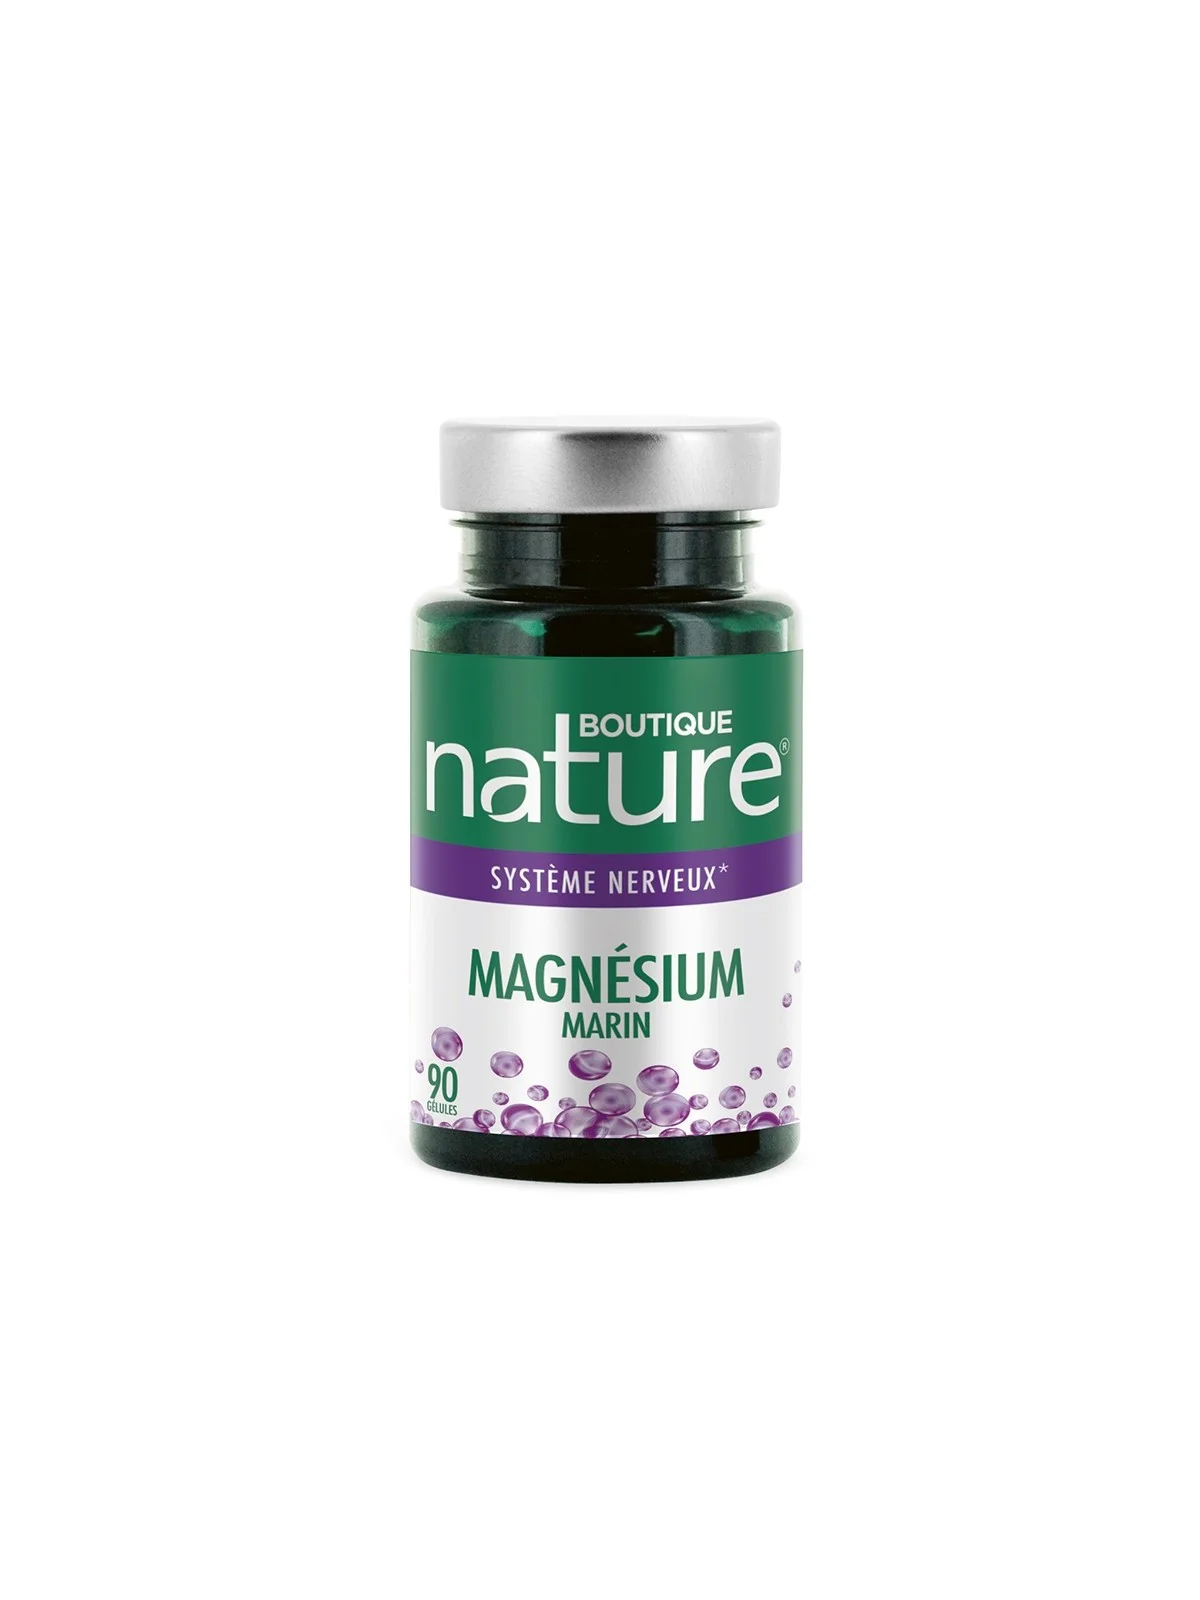 Magnésium marin équilibre nerveux Boutique Nature